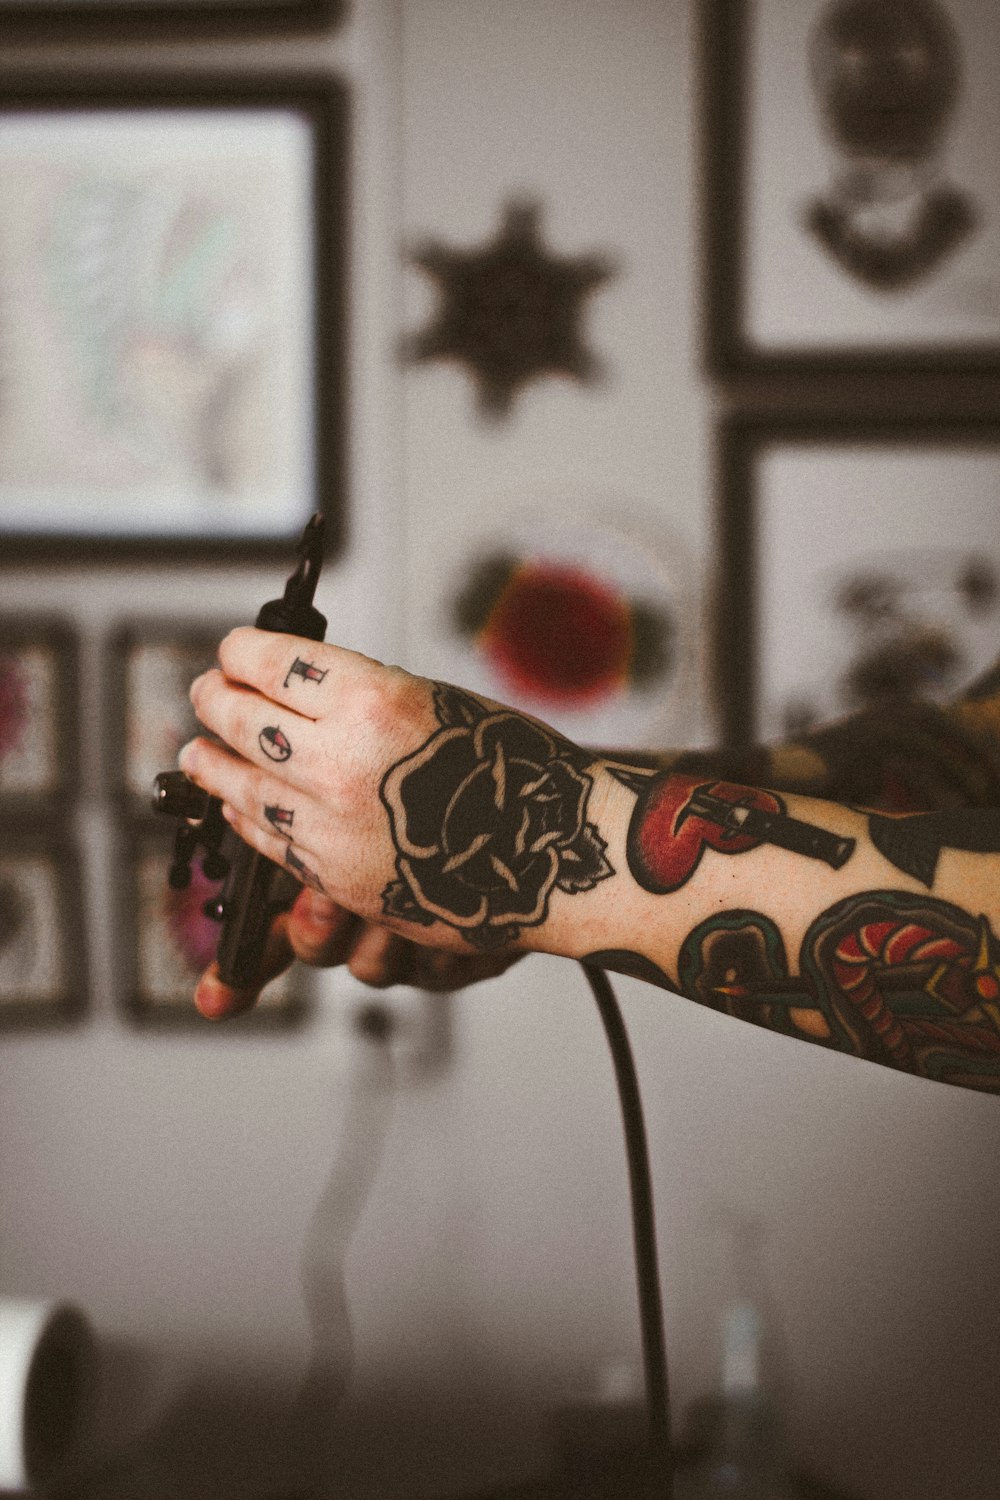 Fotografia de foco raso de pessoa segurando máquina de tatuagem preta